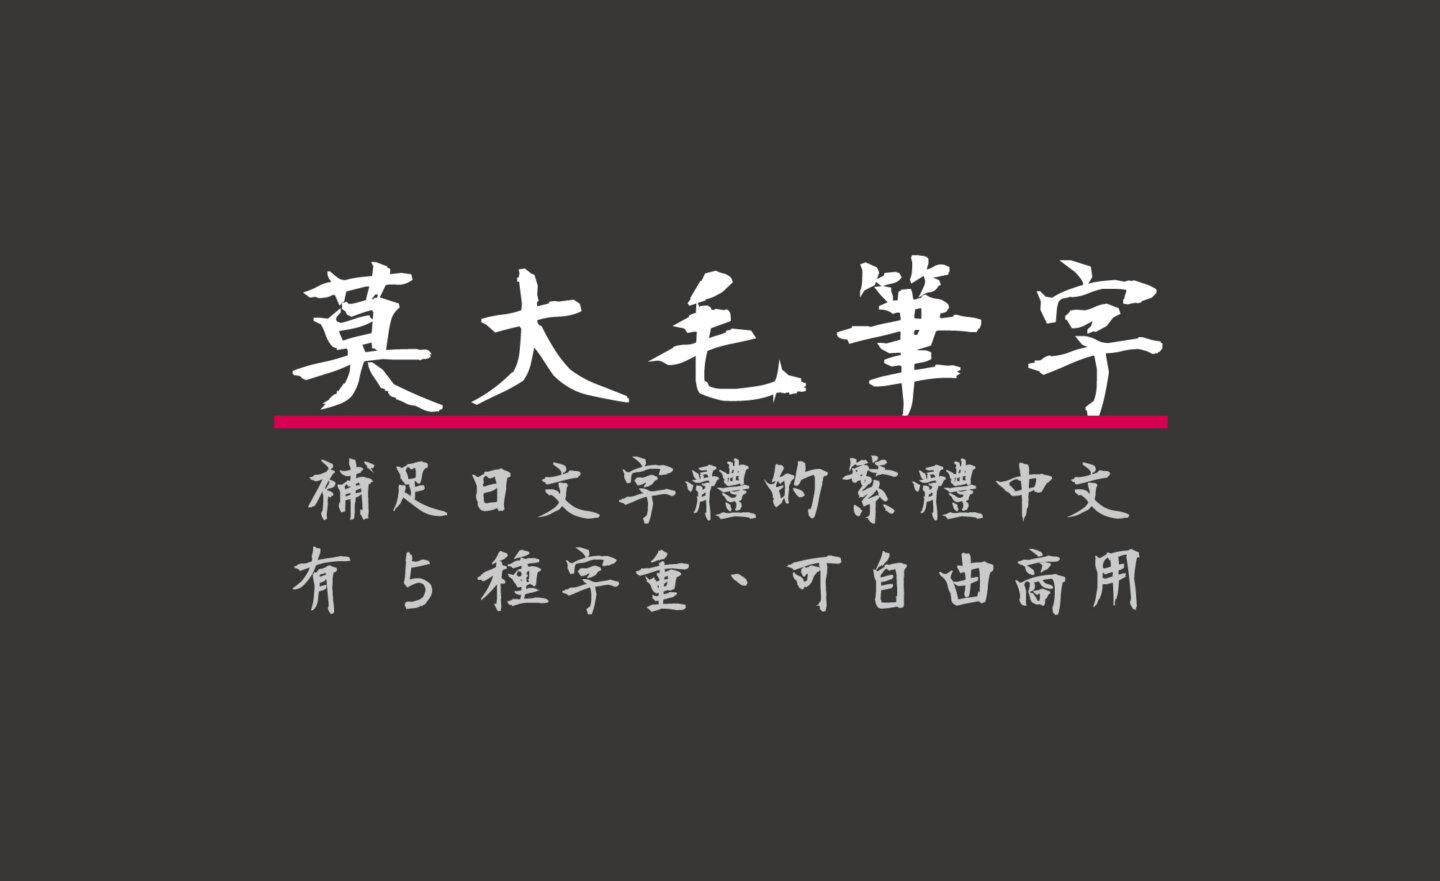 【免費】(Wins/Mac) 「莫大毛筆字體」補足日文字體的繁體中文，5種字重、可商用！